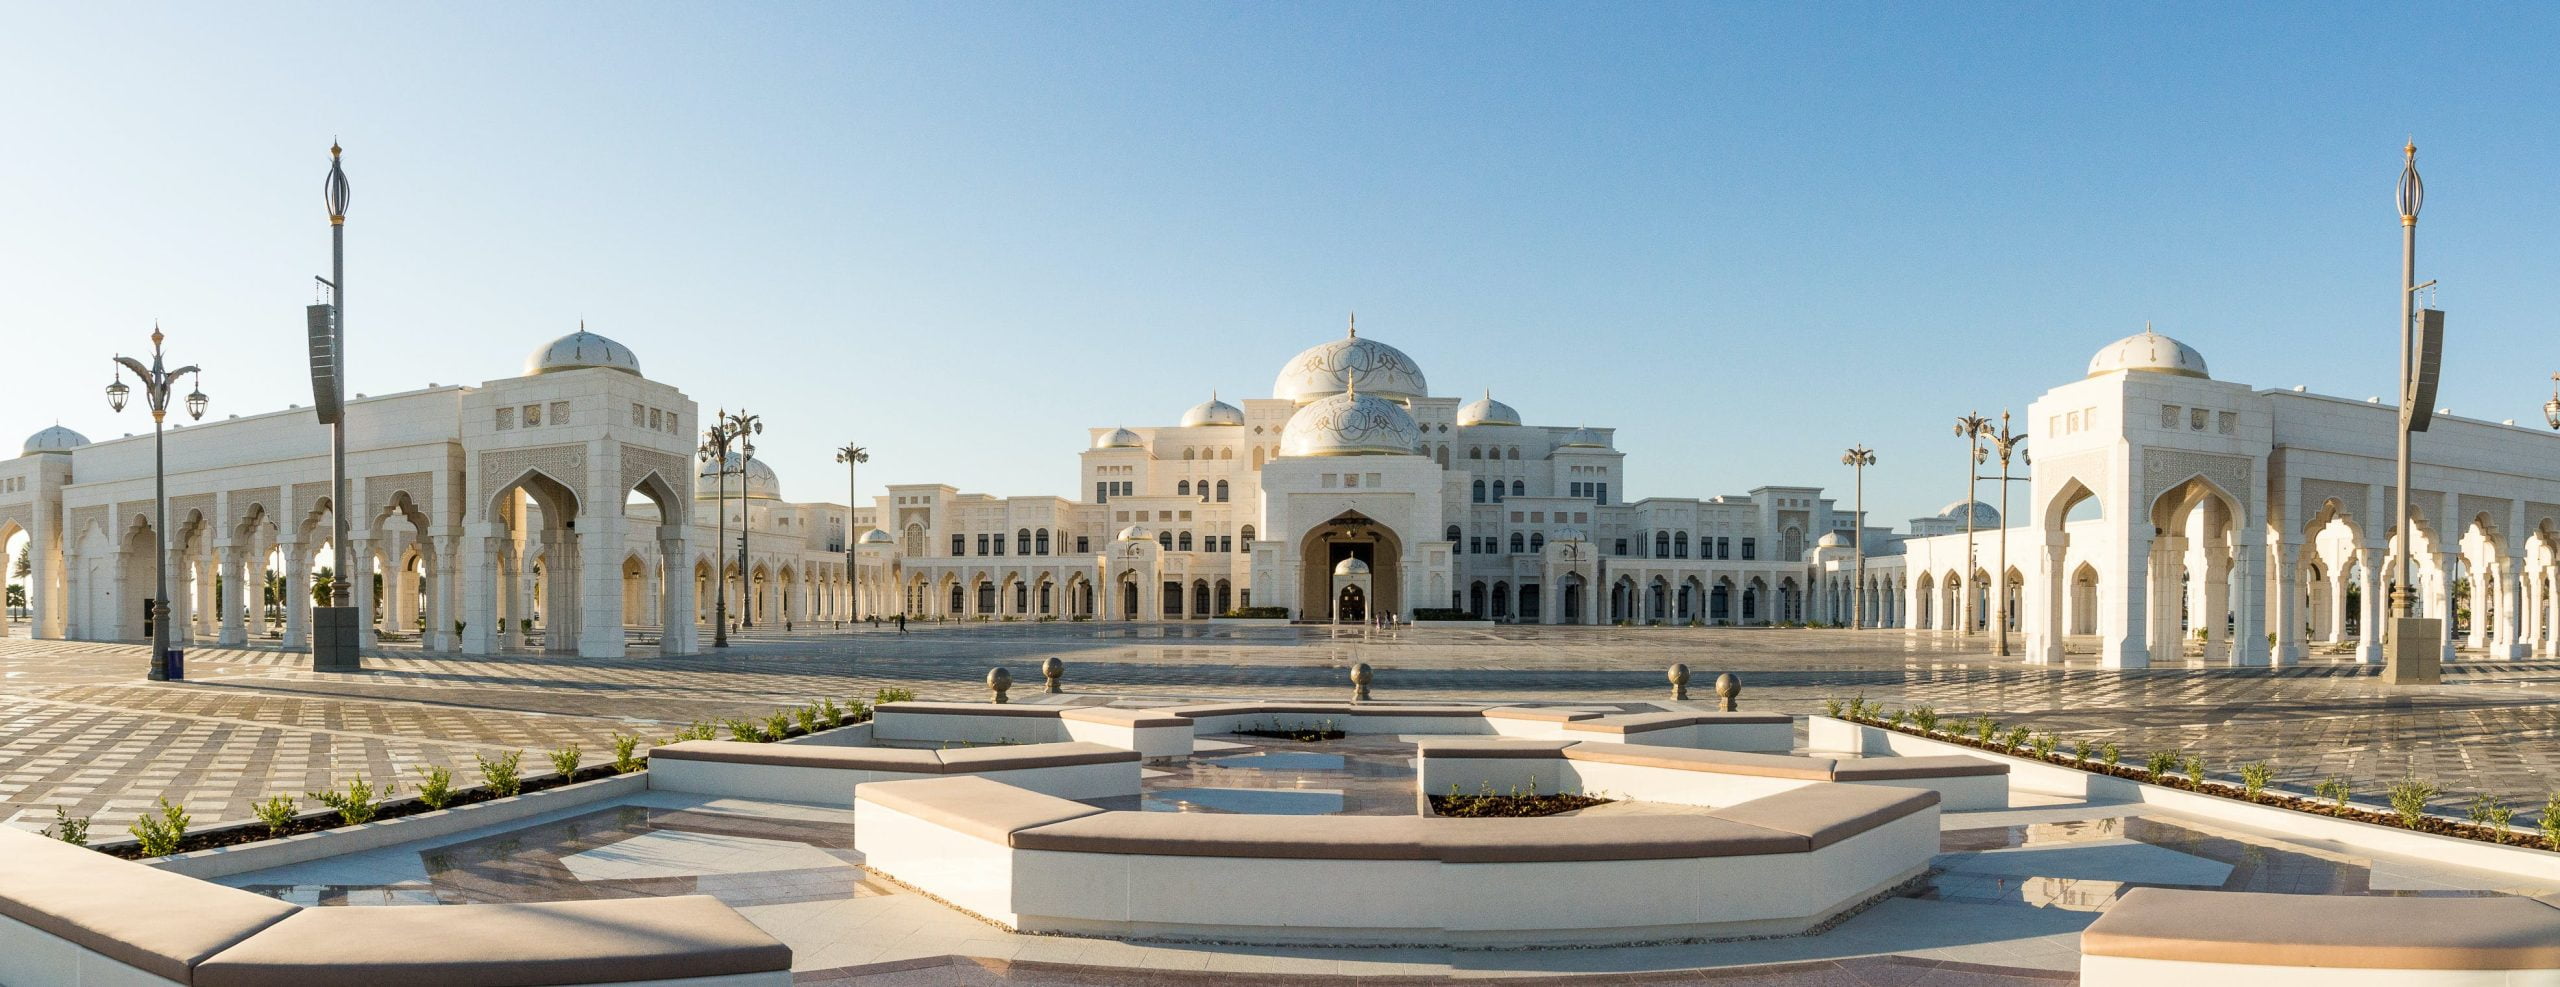 Qasr Al watan Abu Dhabi